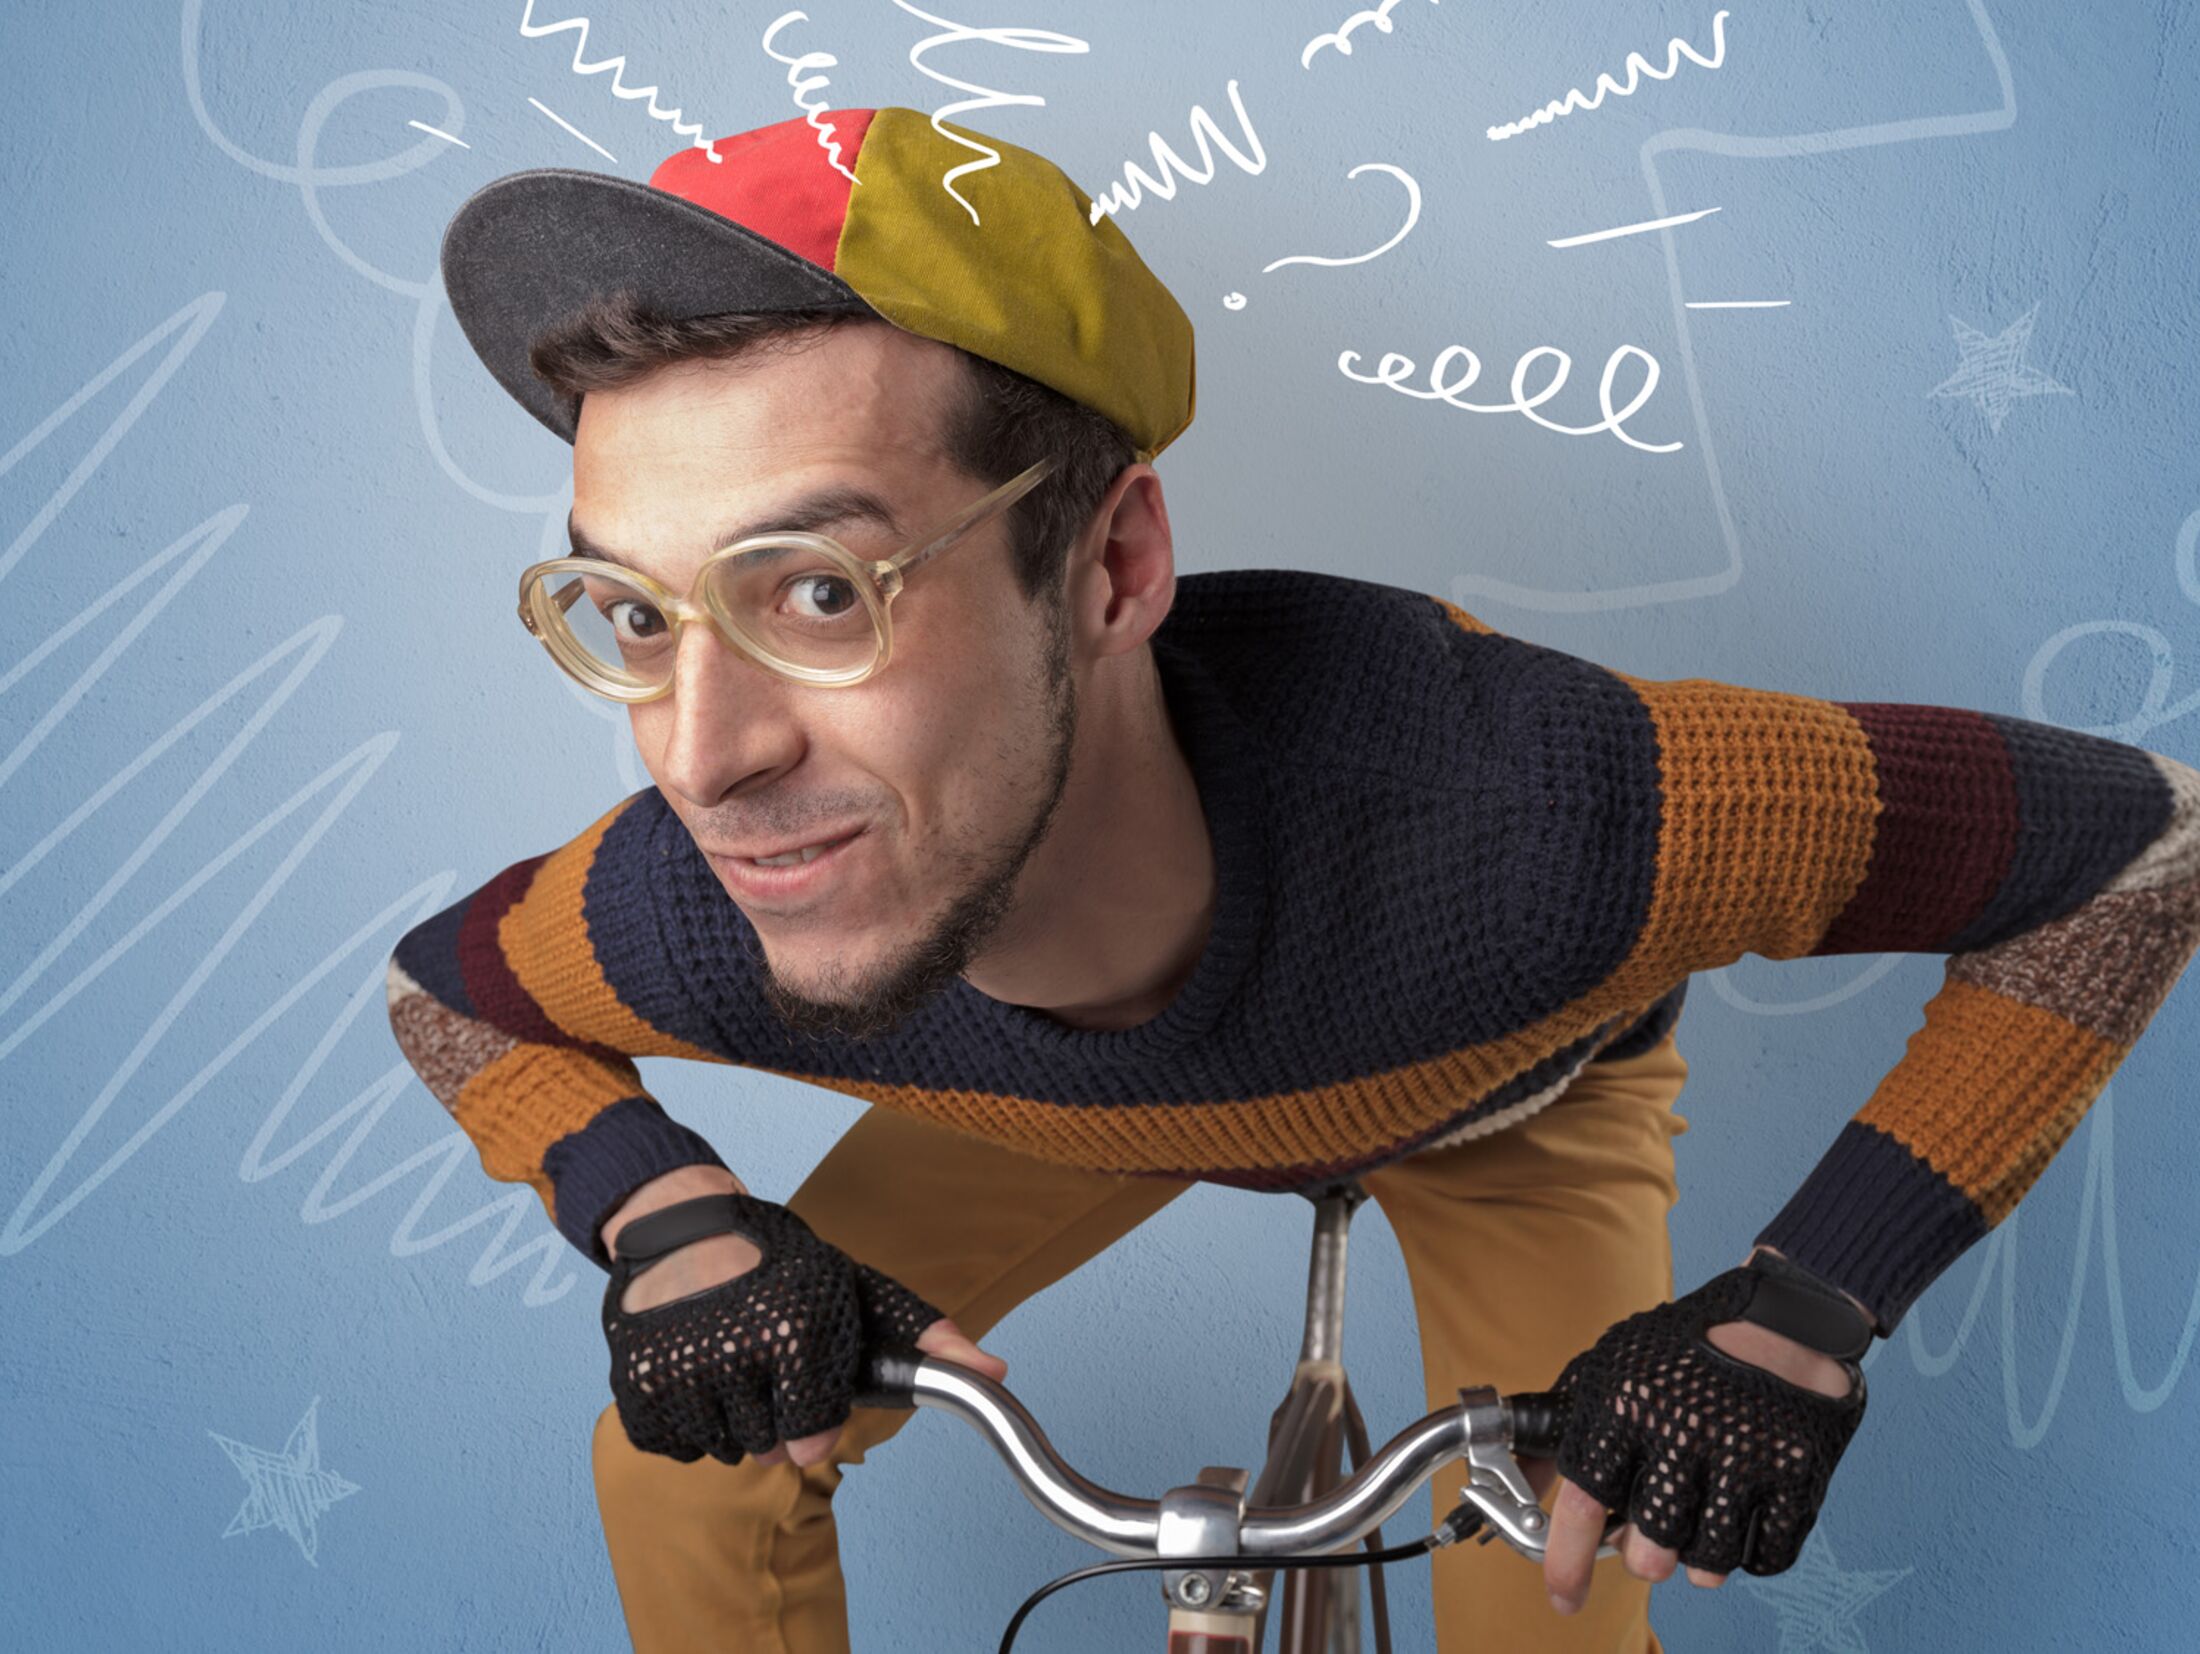 Ran an den Blinker › pressedienst-fahrrad